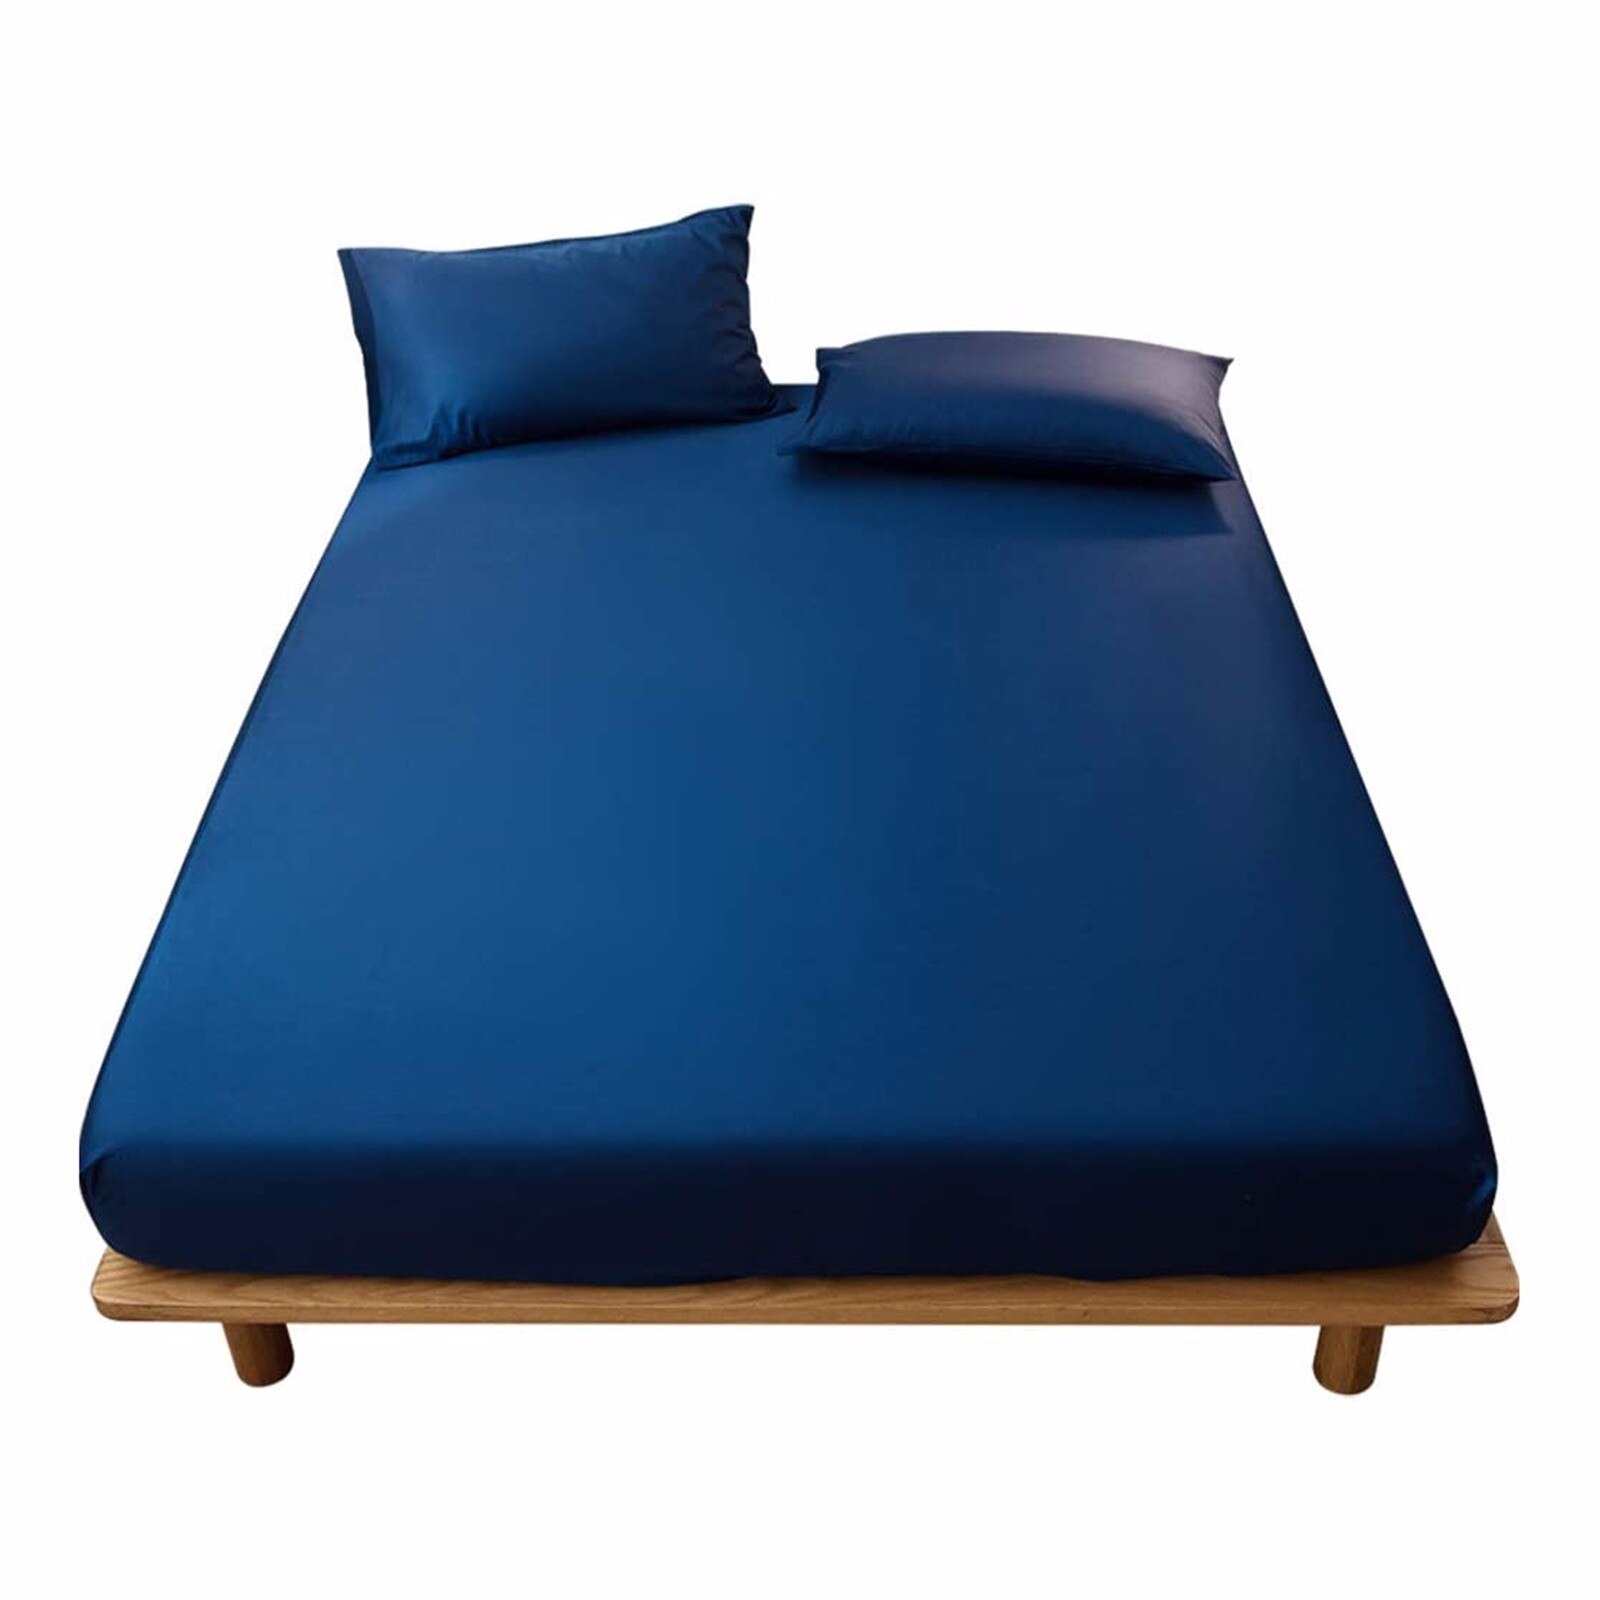 Madrasovertræk i massiv farve slibning sengetøj sengetøj lagner med elastik dobbelt queen size sengetøj 1 stk